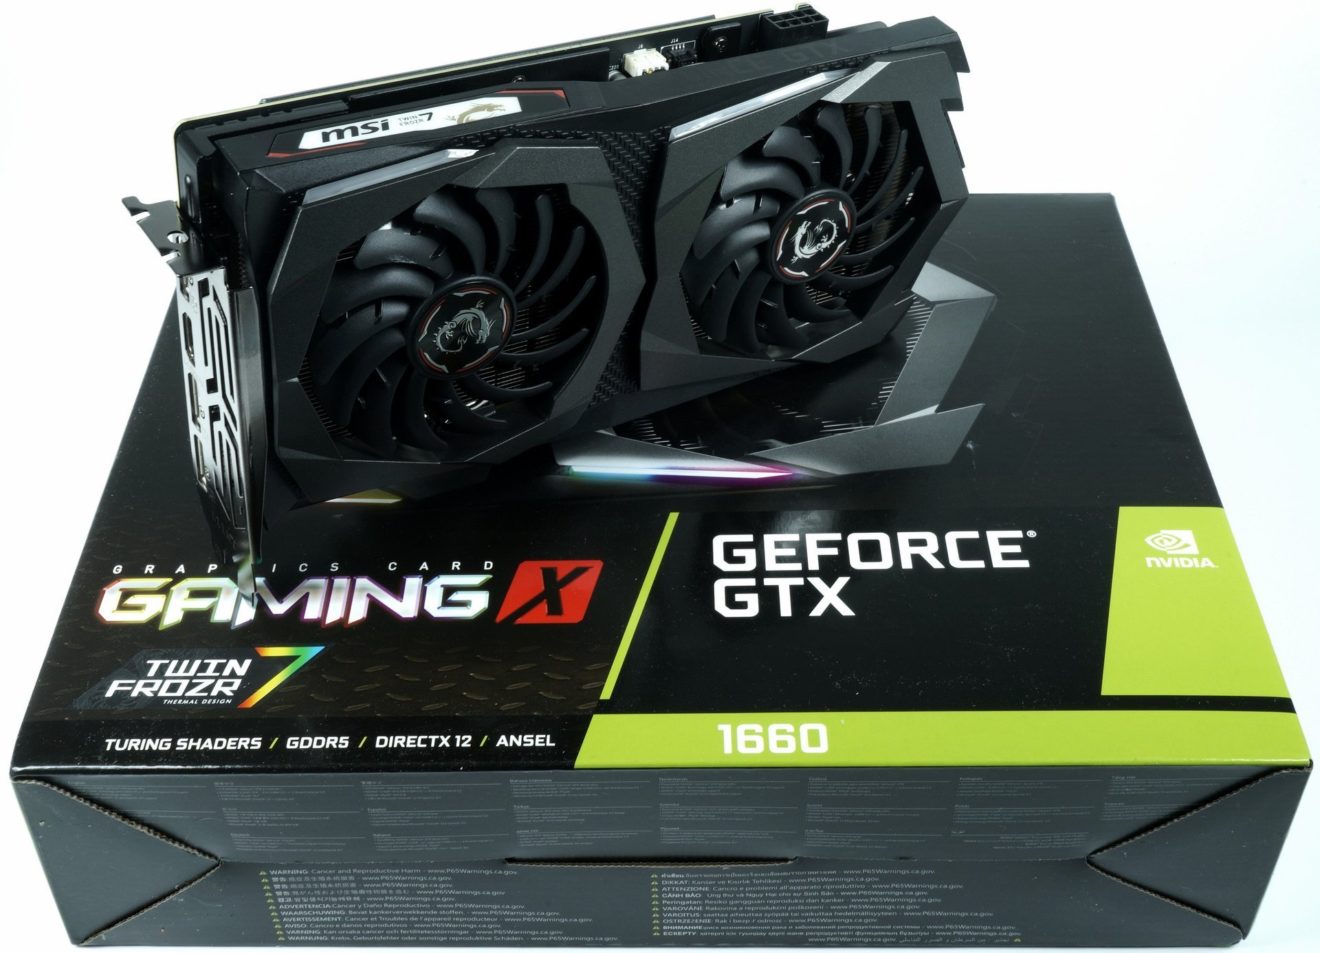 Image 2 : Test : GeForce GTX 1660, le prochain best-seller de NVIDIA